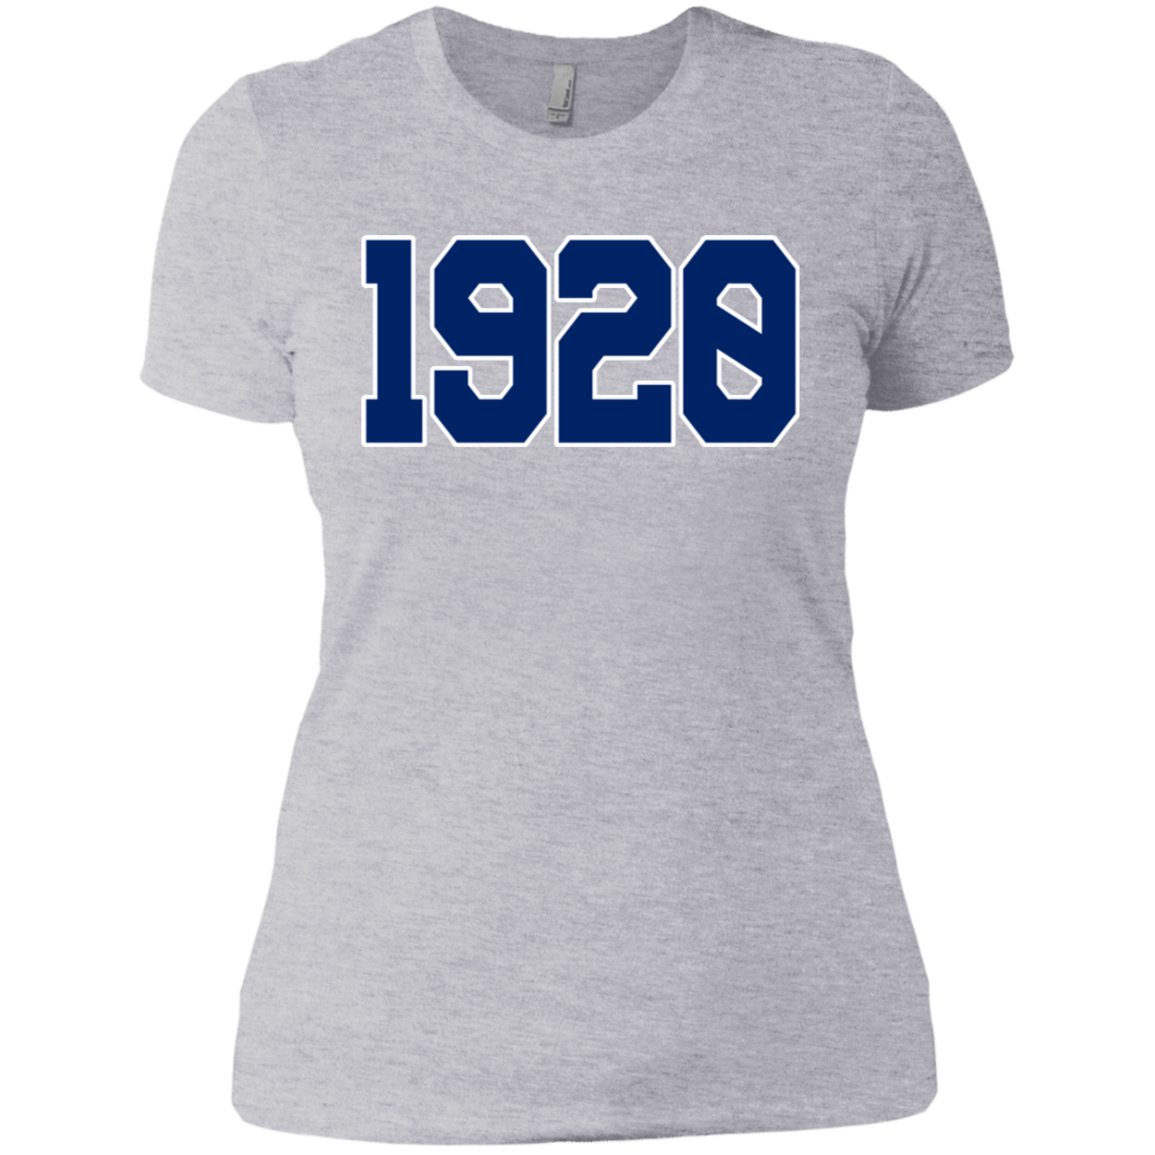 Greek Year 1920 Boyfriend T-Shirt